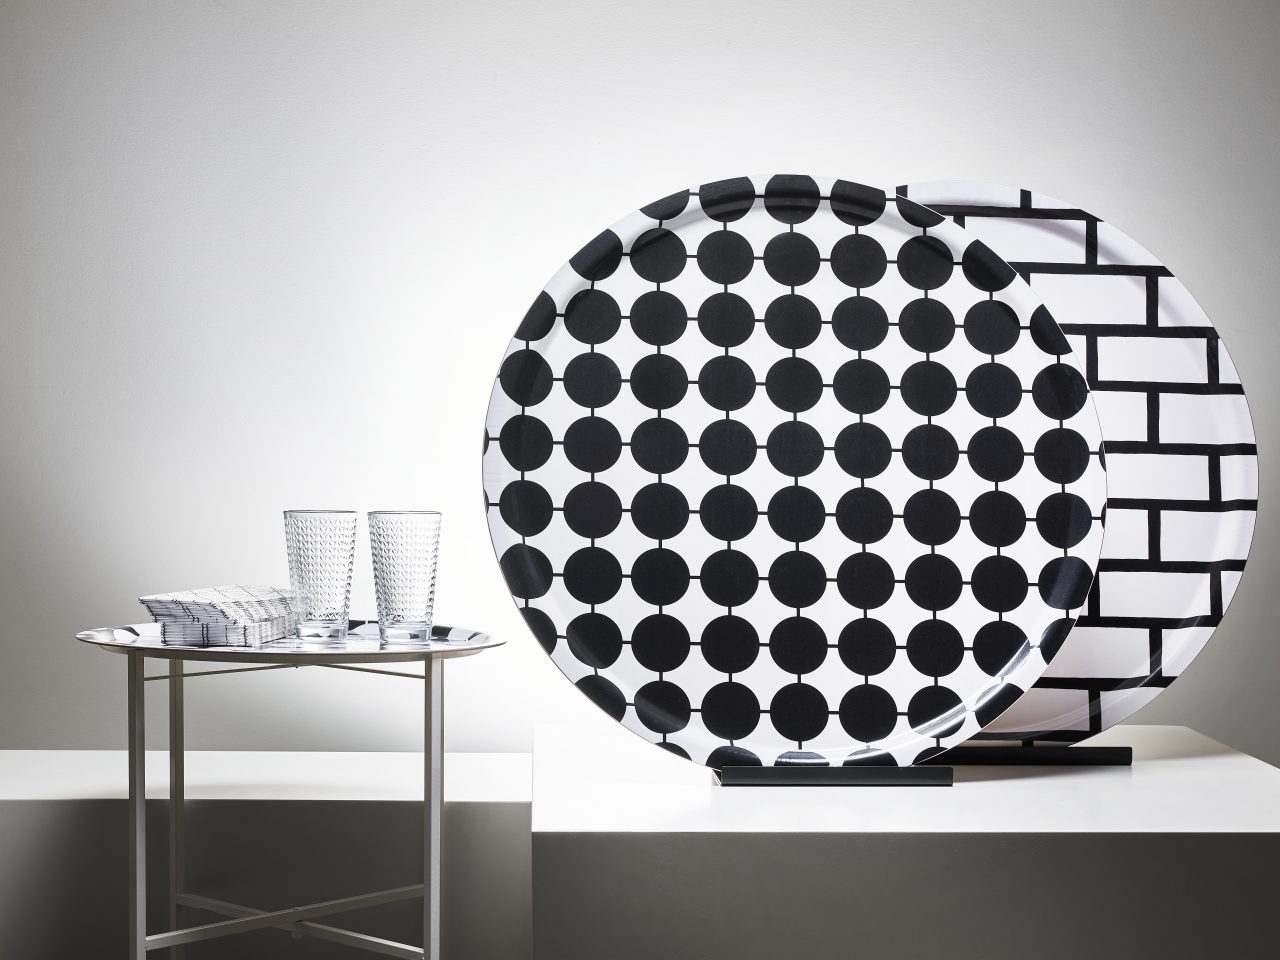 Två glas, pappersservetter i en hög på ett litet brickbord bredvid två stora, runda brickor med svartvita grafiska mönster.